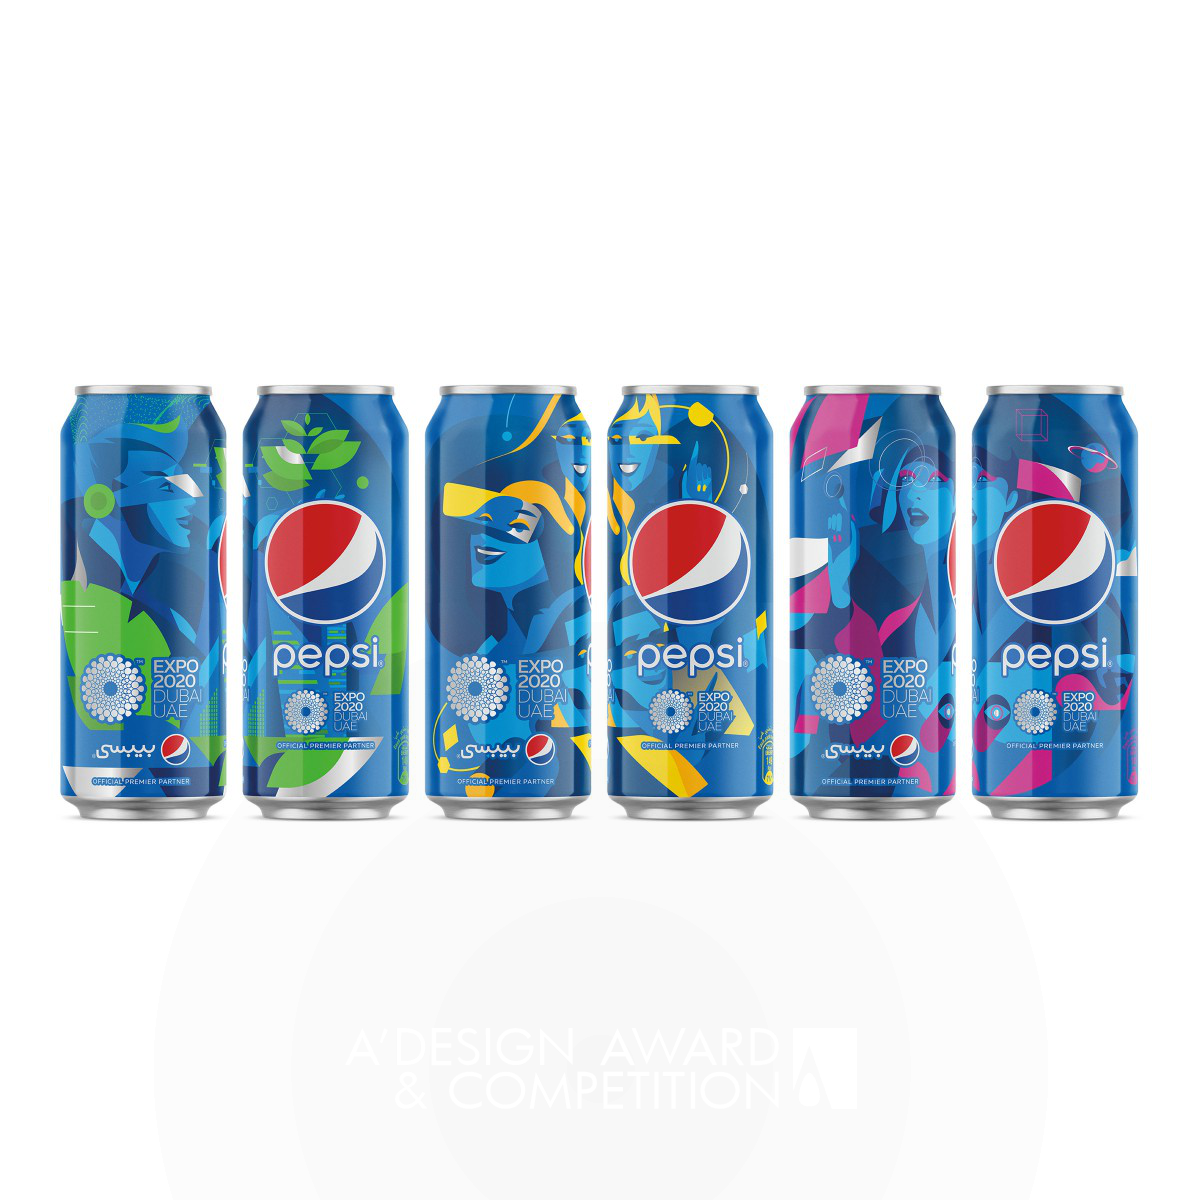 Pepsi Expo 2020